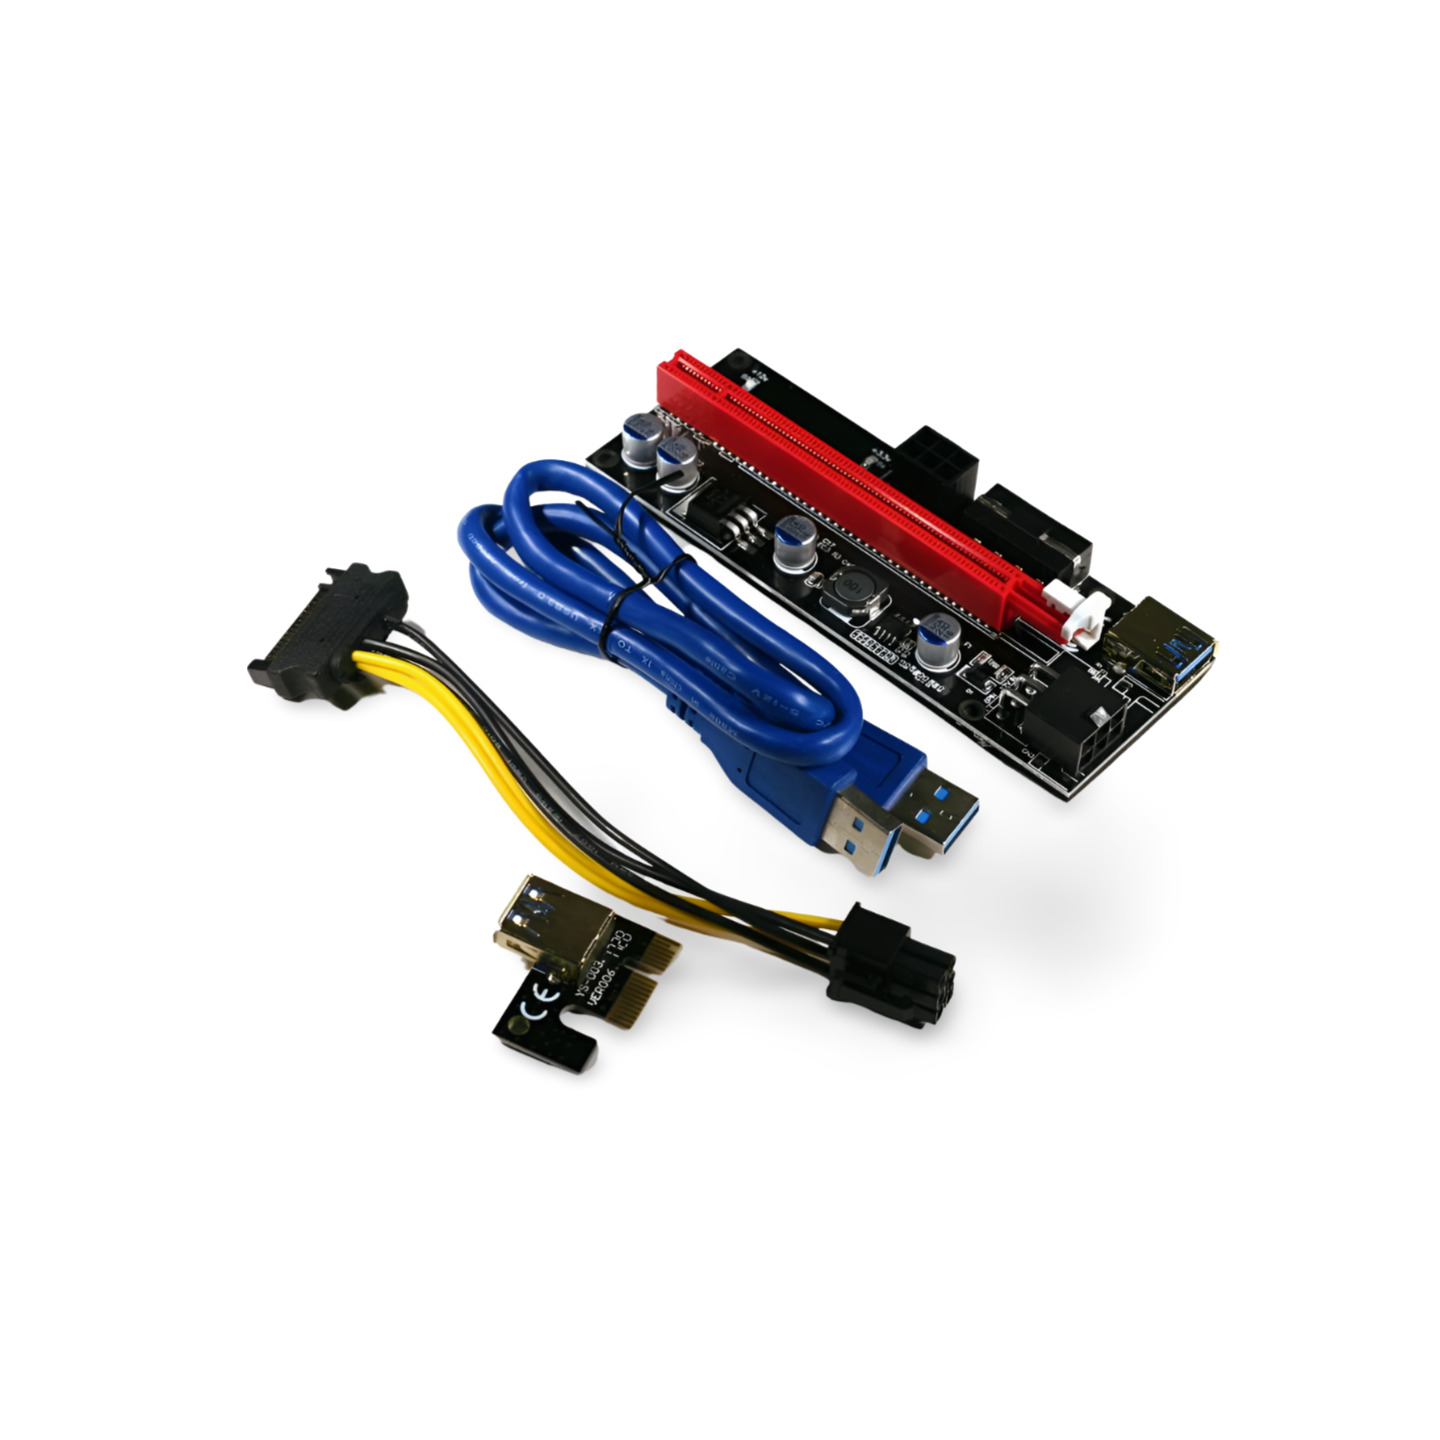 2ft VER009S PCI-E Riser Card PCIe 1x to 16x USB 3.0 Data Cable - Blue